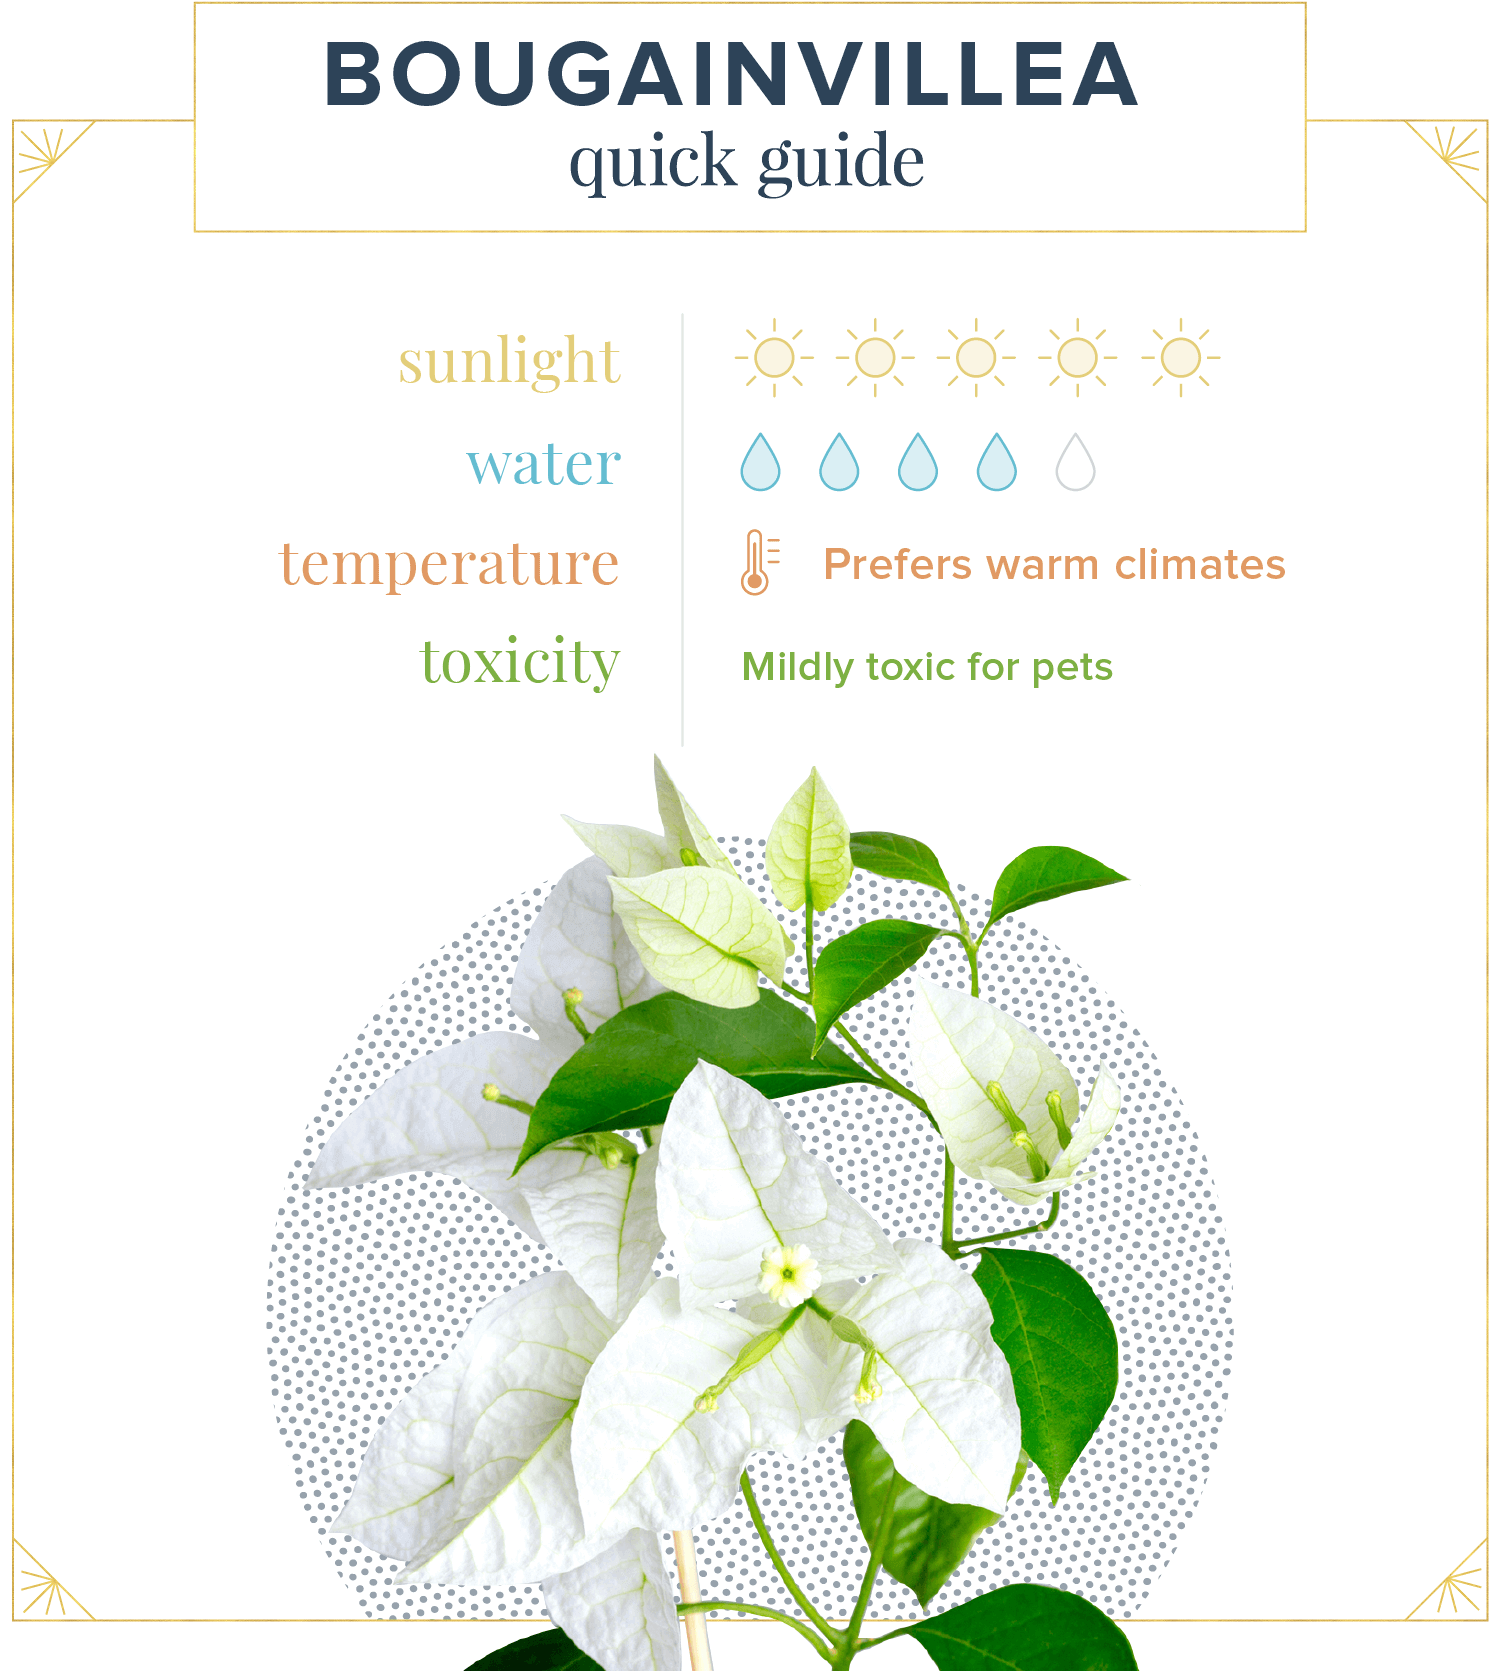 bougainvillea-care-quick-guide.